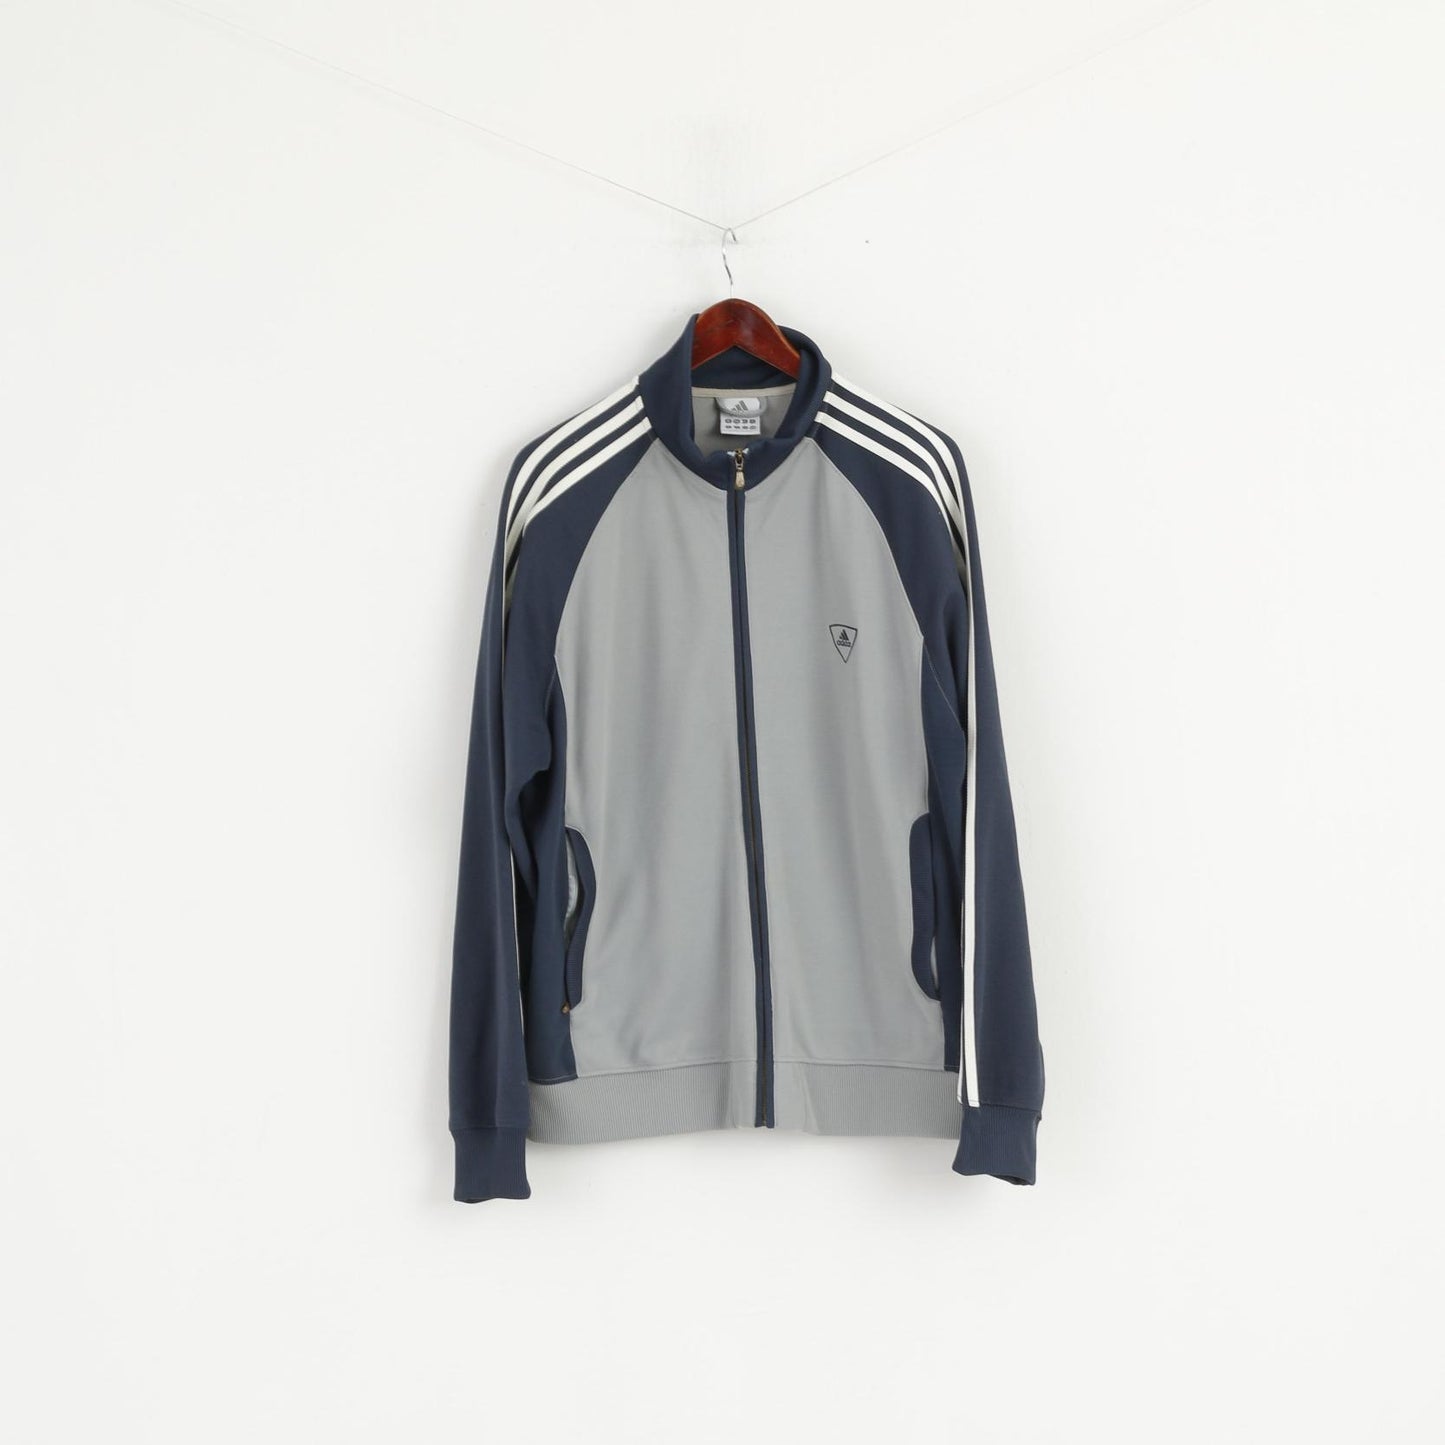 Adidas Men L Sweatshirt Grey Navy Cotton Vintage Full Zipper Activewear Top